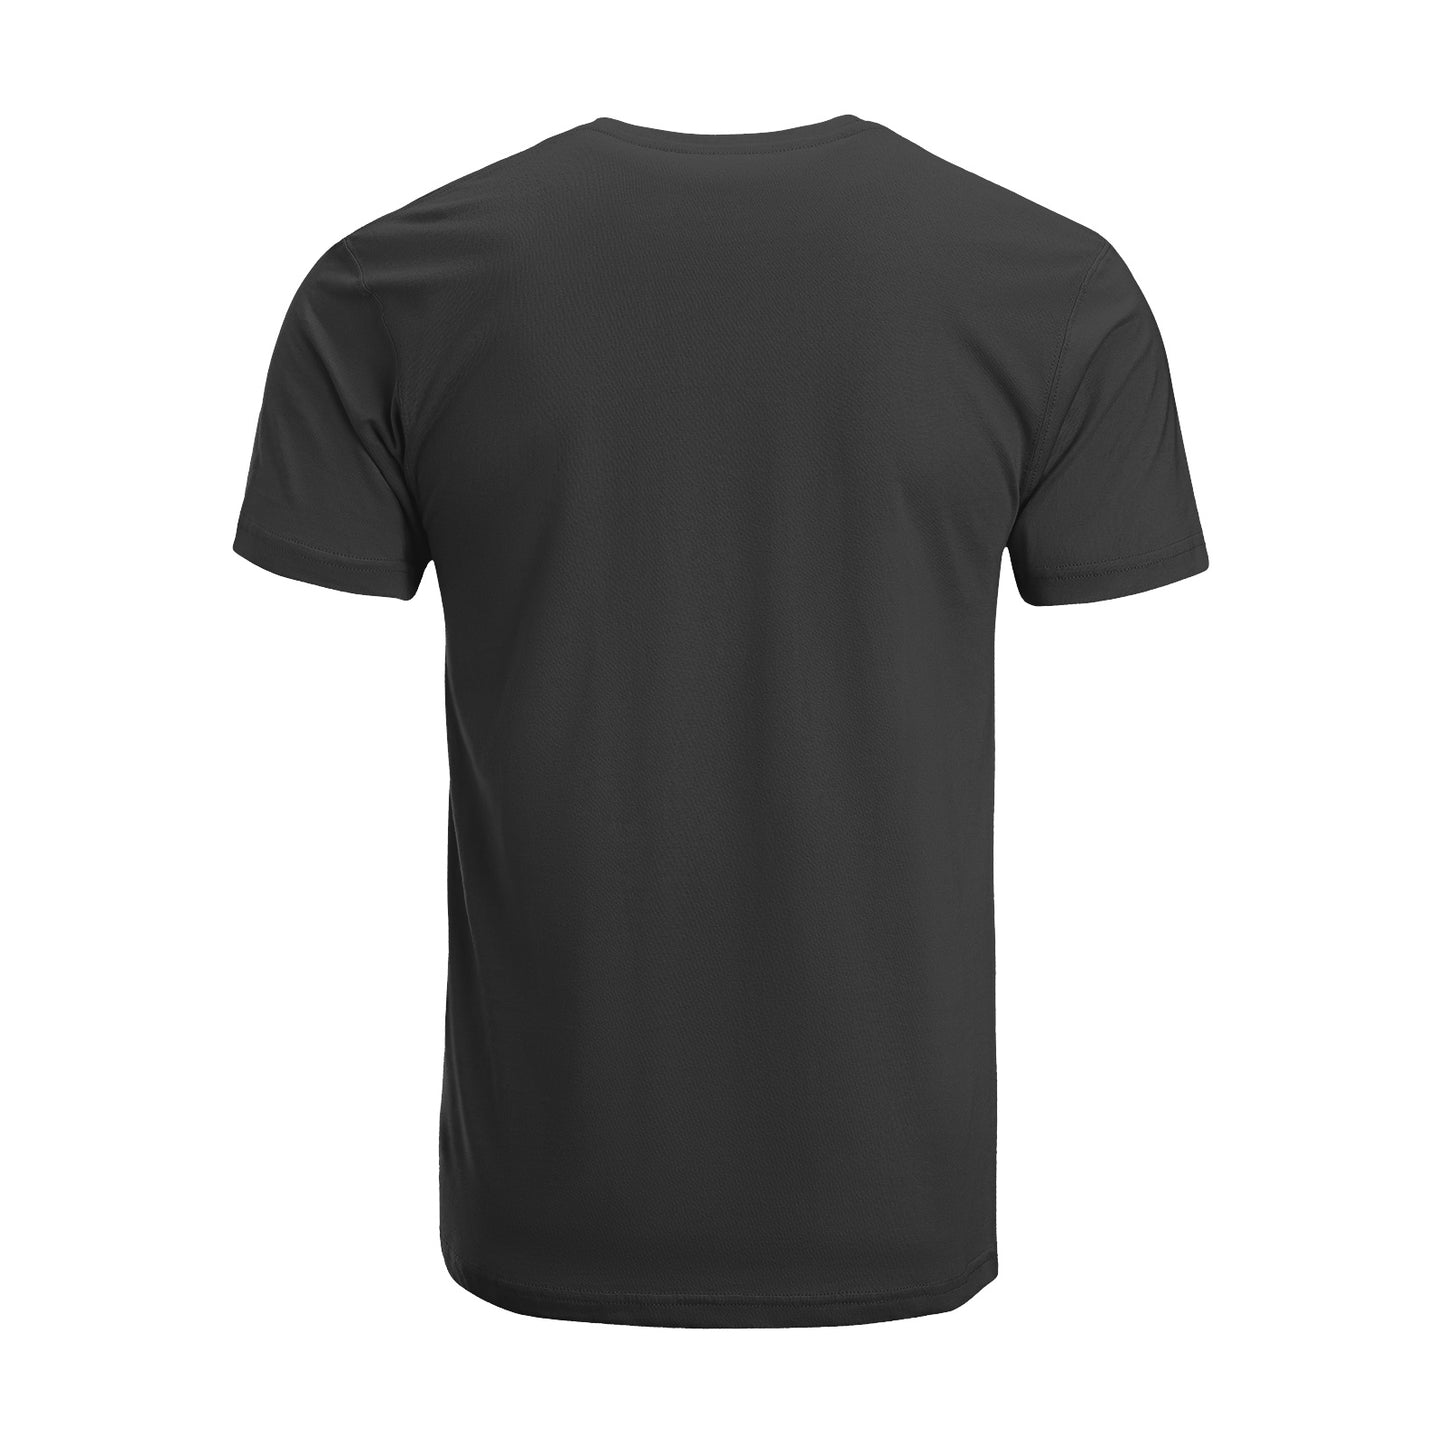 Toxic T-Shirt DromedarShop.com Online Boutique